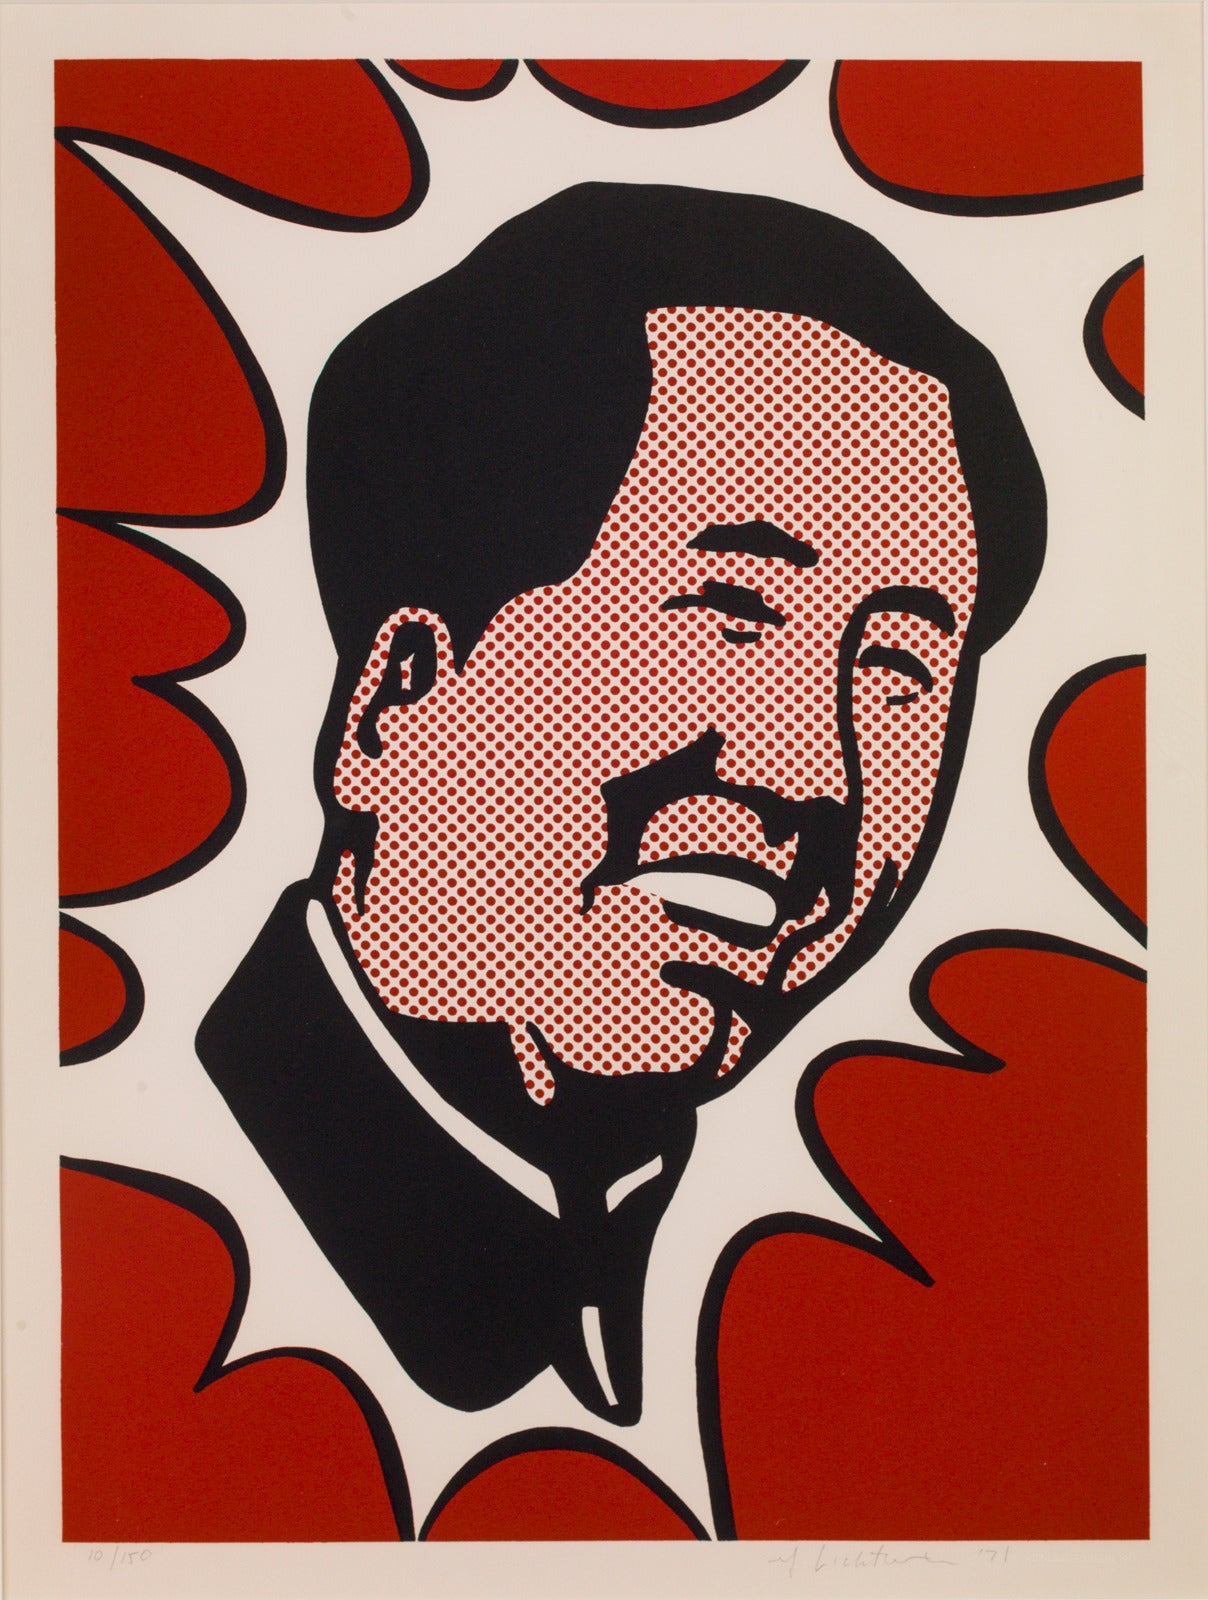 Mao - Print by Roy Lichtenstein